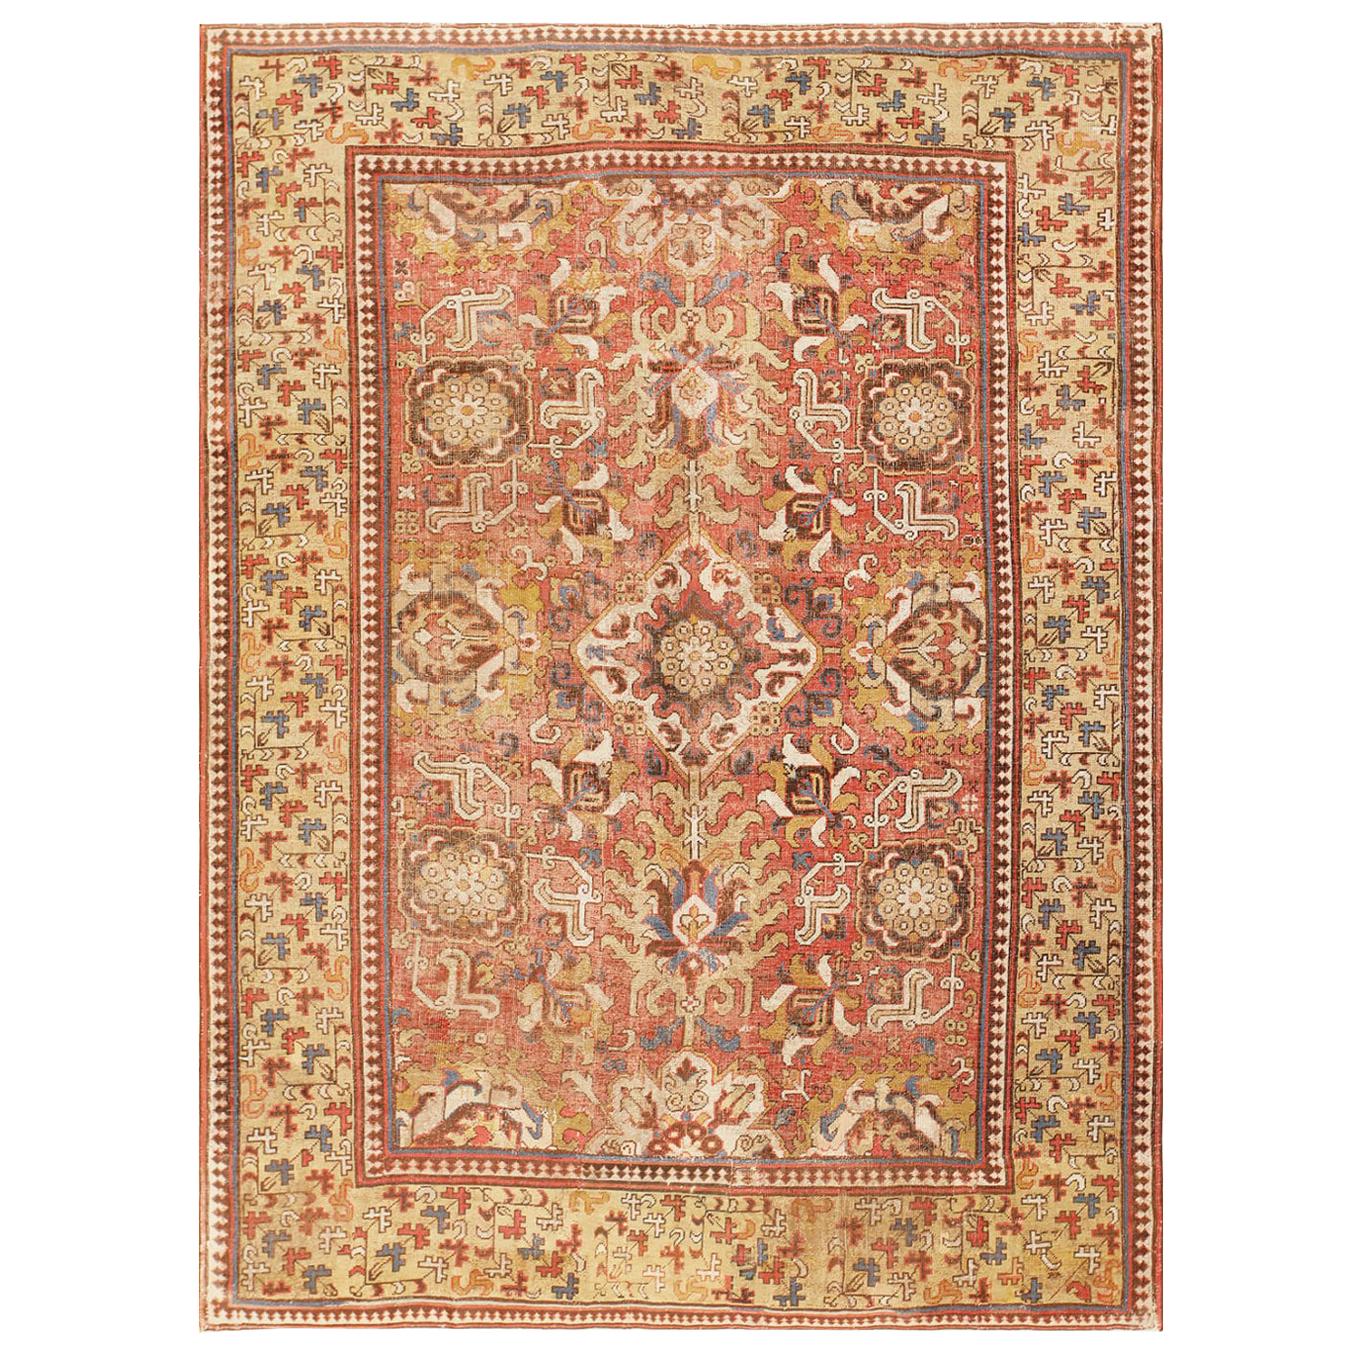 18th Century Antique Caucasian Kuba Carpet. 6 ft 9 in x 9 ft 5 in